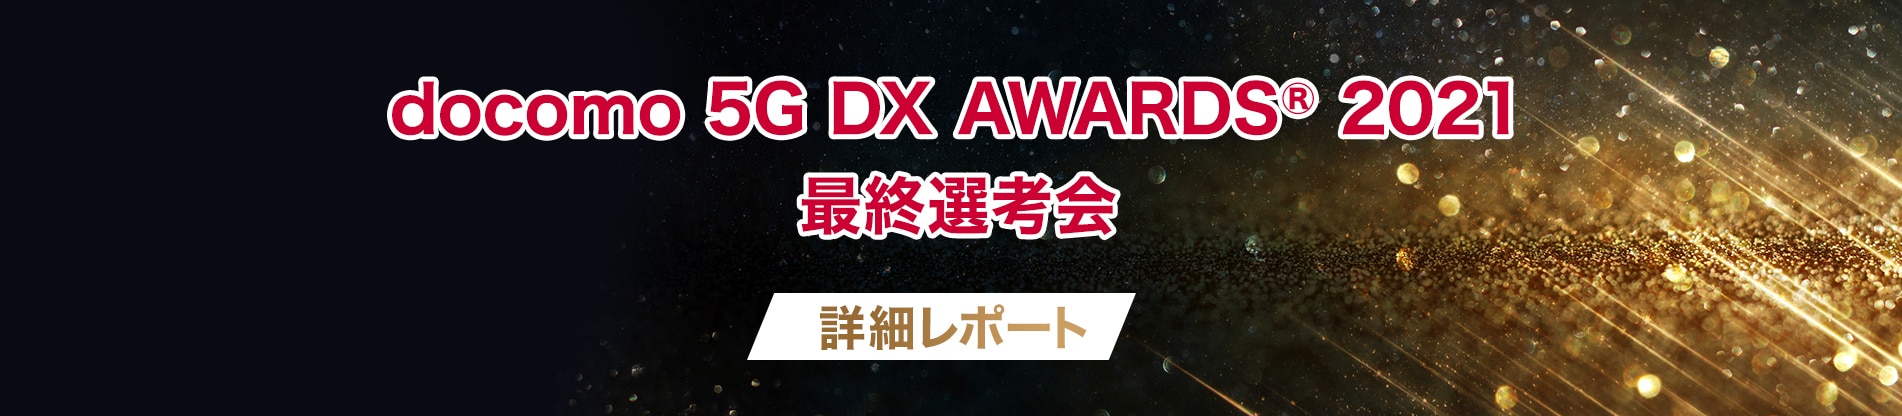 docomo 5G AWARDS 2021 最終選考会 詳細レポート